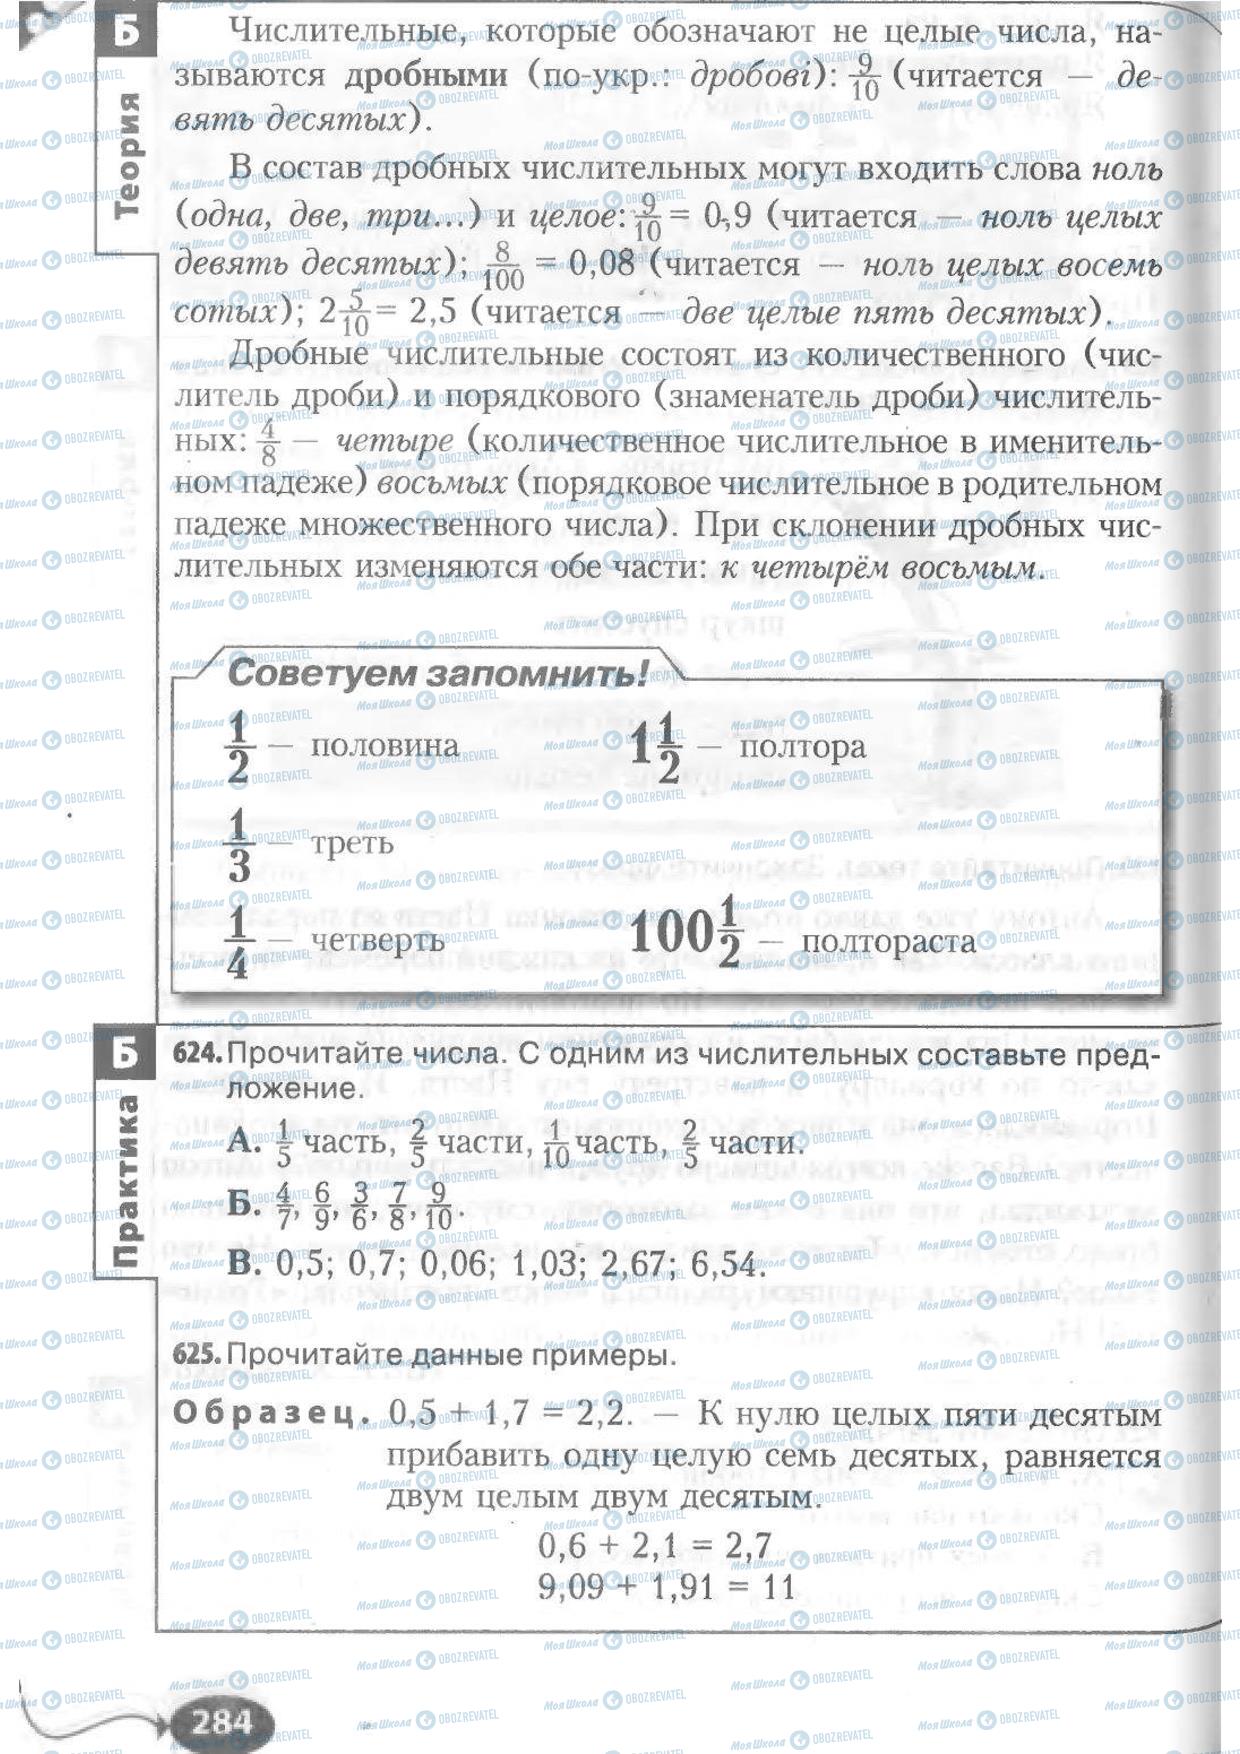 Підручники Російська мова 6 клас сторінка 284